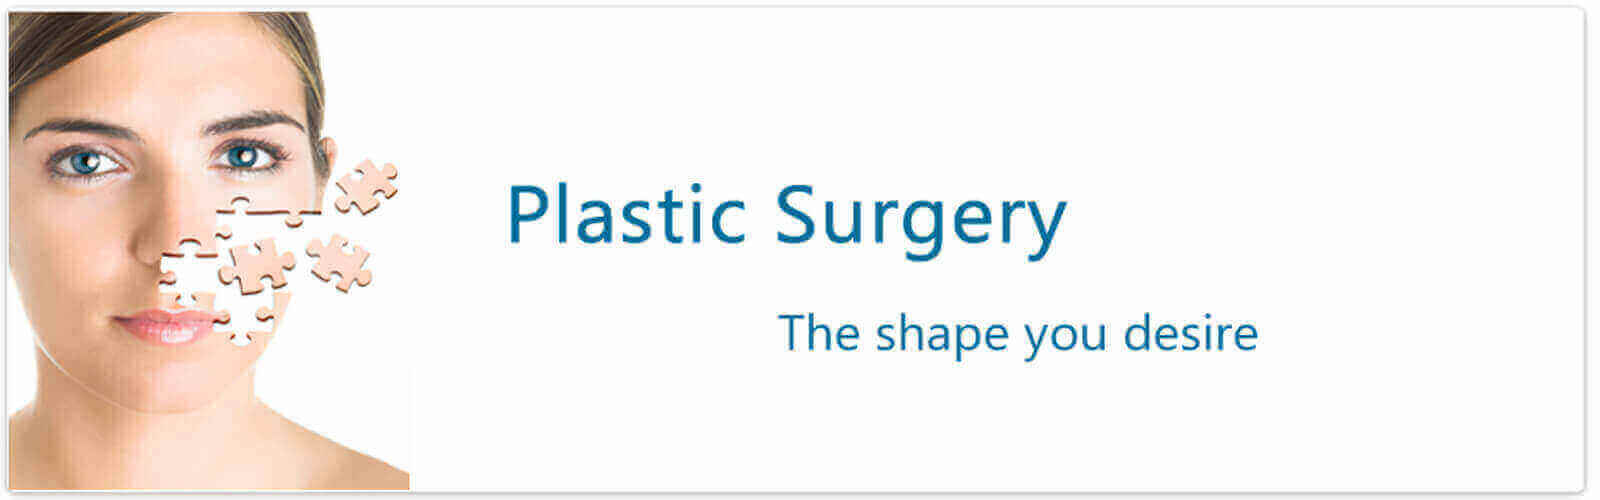 Plastic Surgery in India